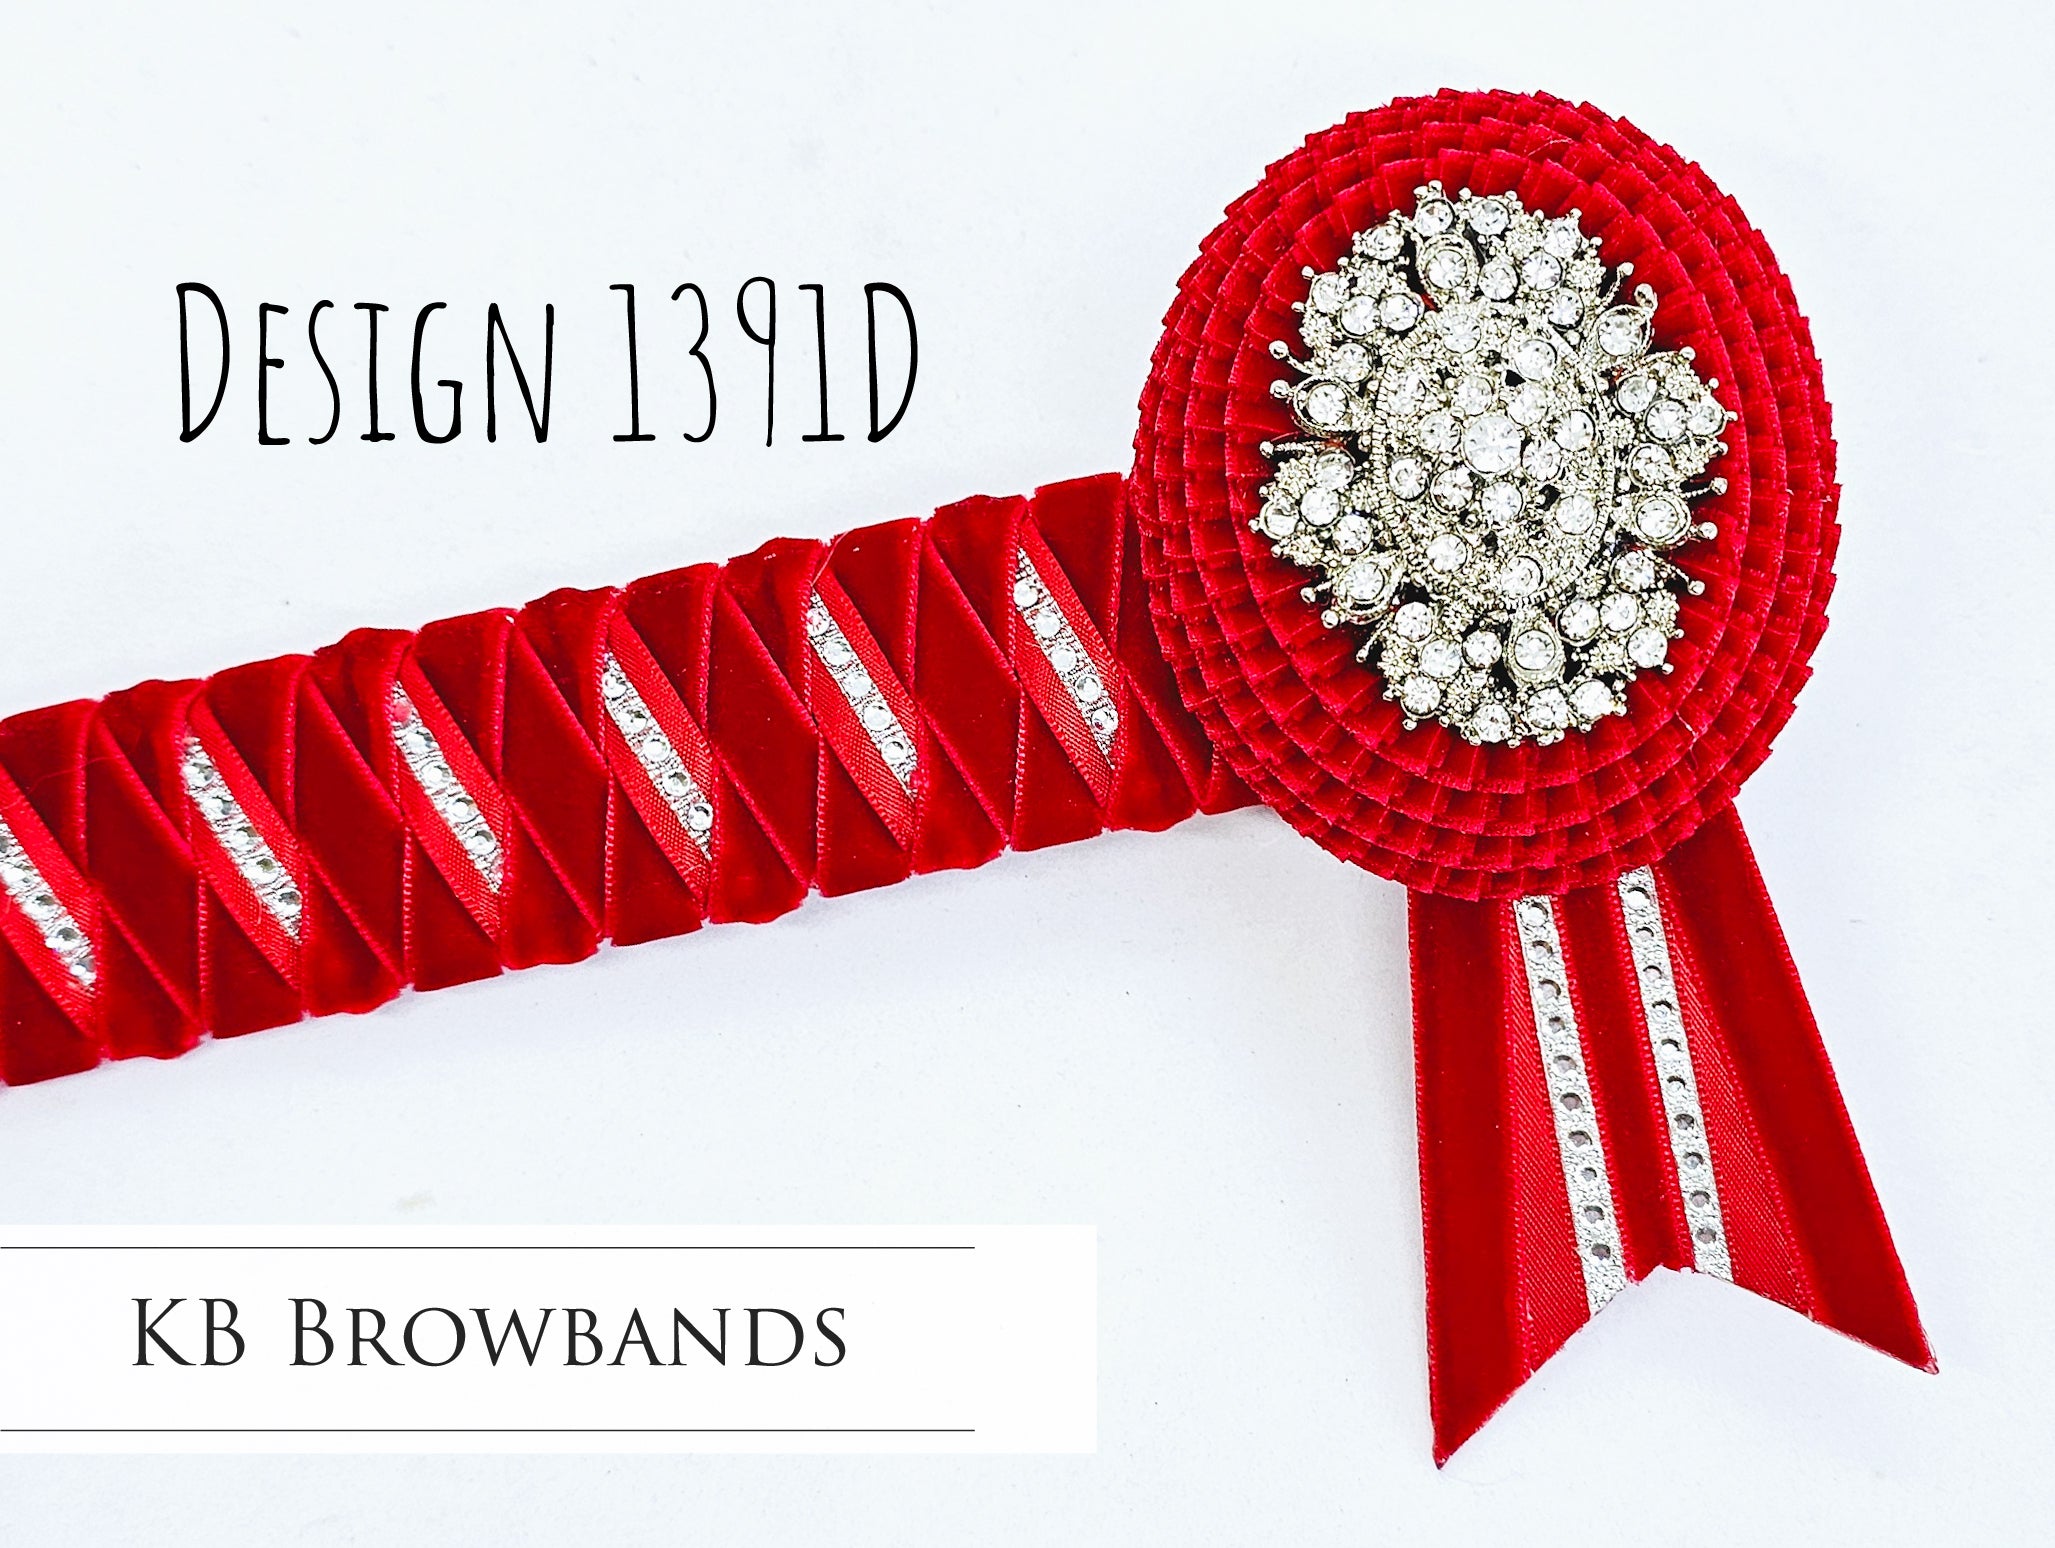 KB Browbands Design 1391D